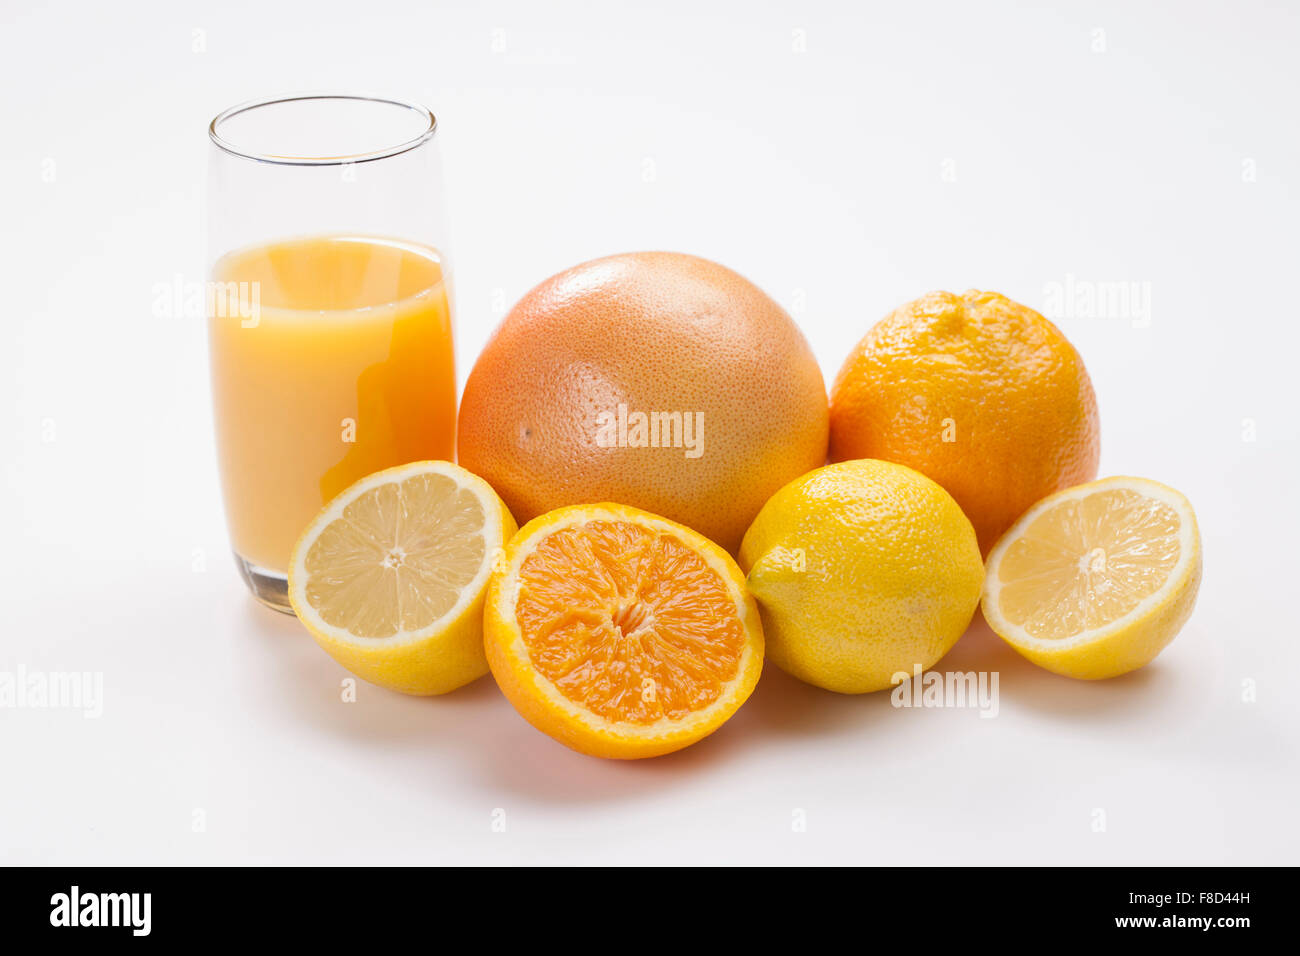 Orange und gelbe Farbe von Früchten wie Grapefruit, Orangen, Zitronen mit einem Glas Saft in der Farbe orange Stockfoto